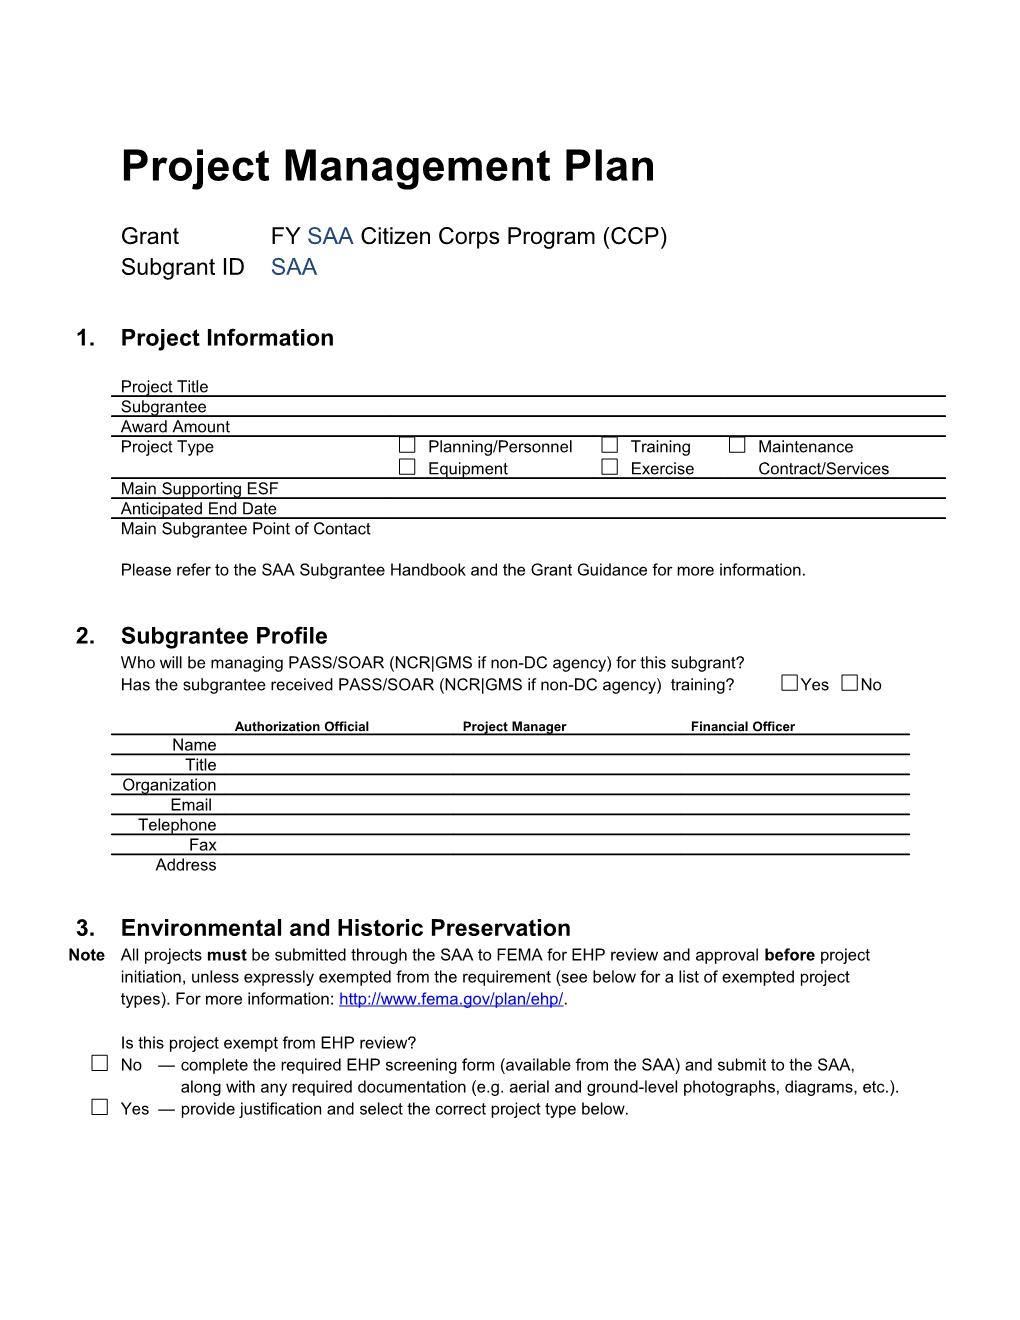 Project Management Plan CCP